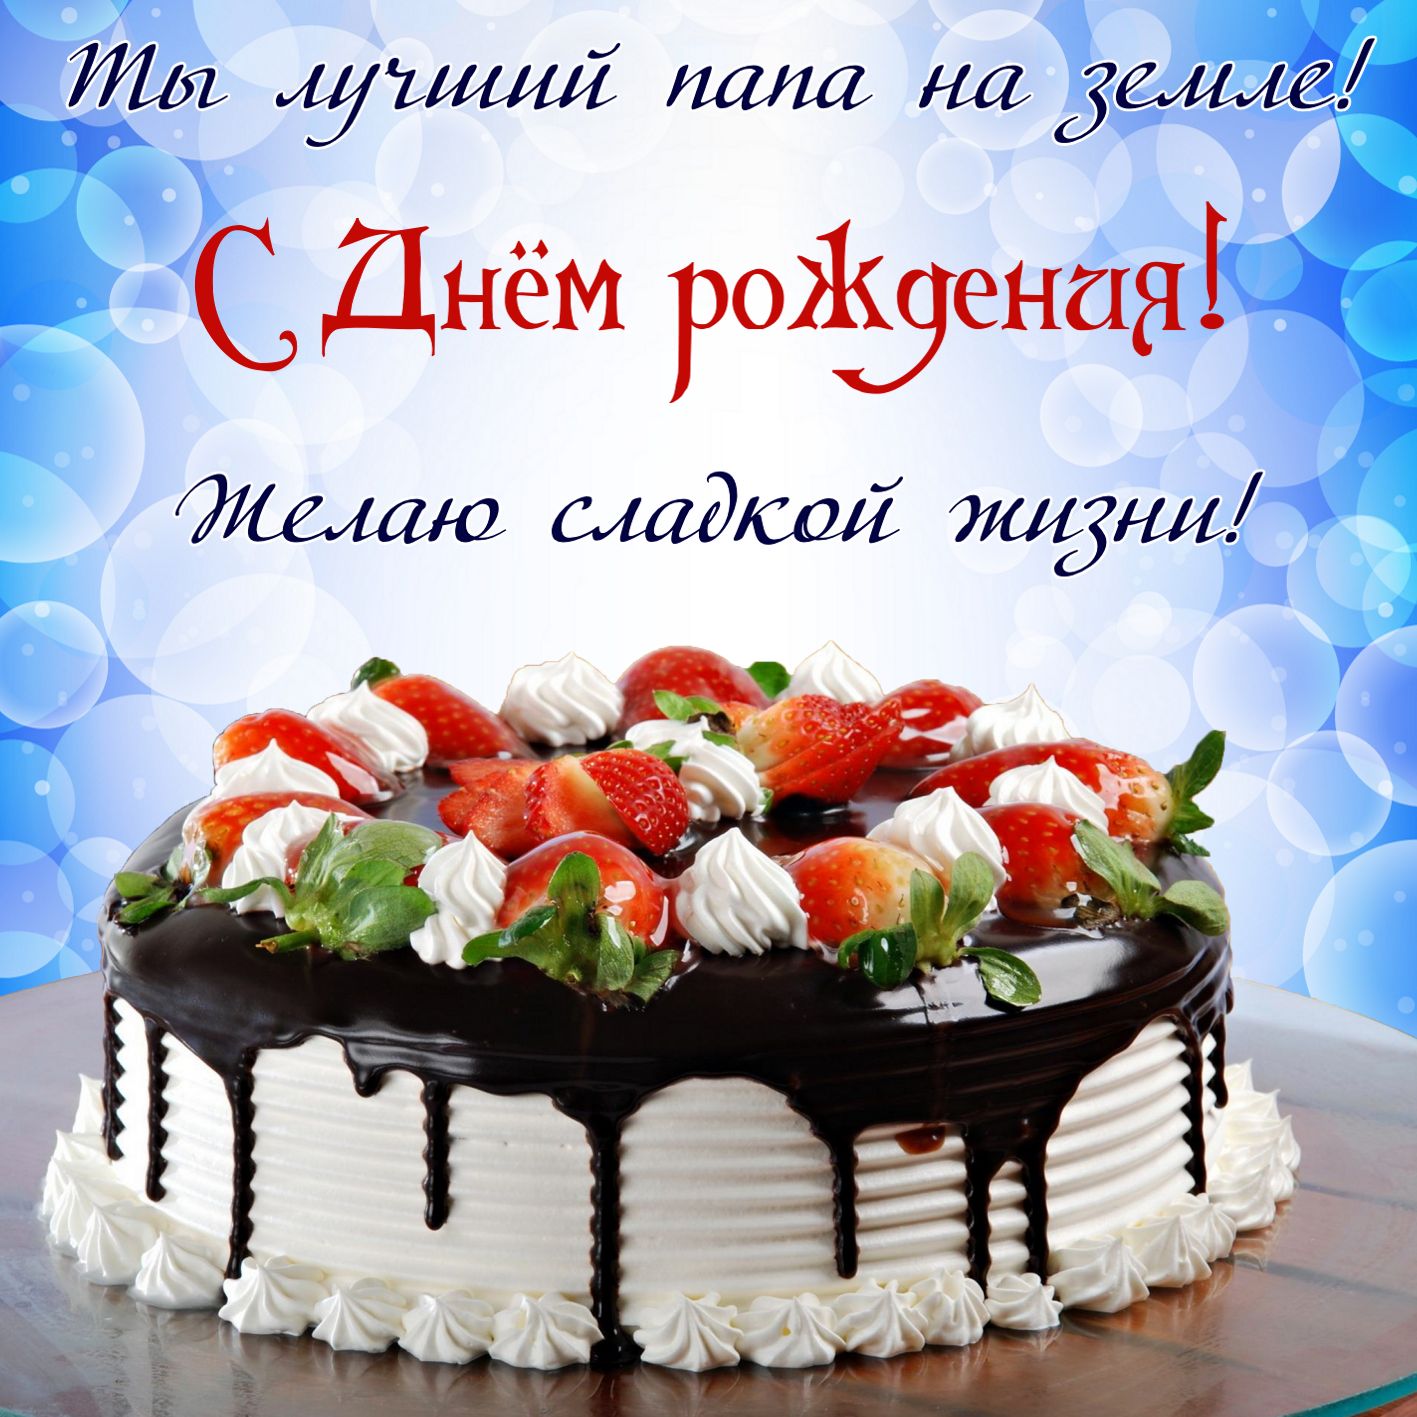 Картинка с большим праздничным тортом папе на День рождения